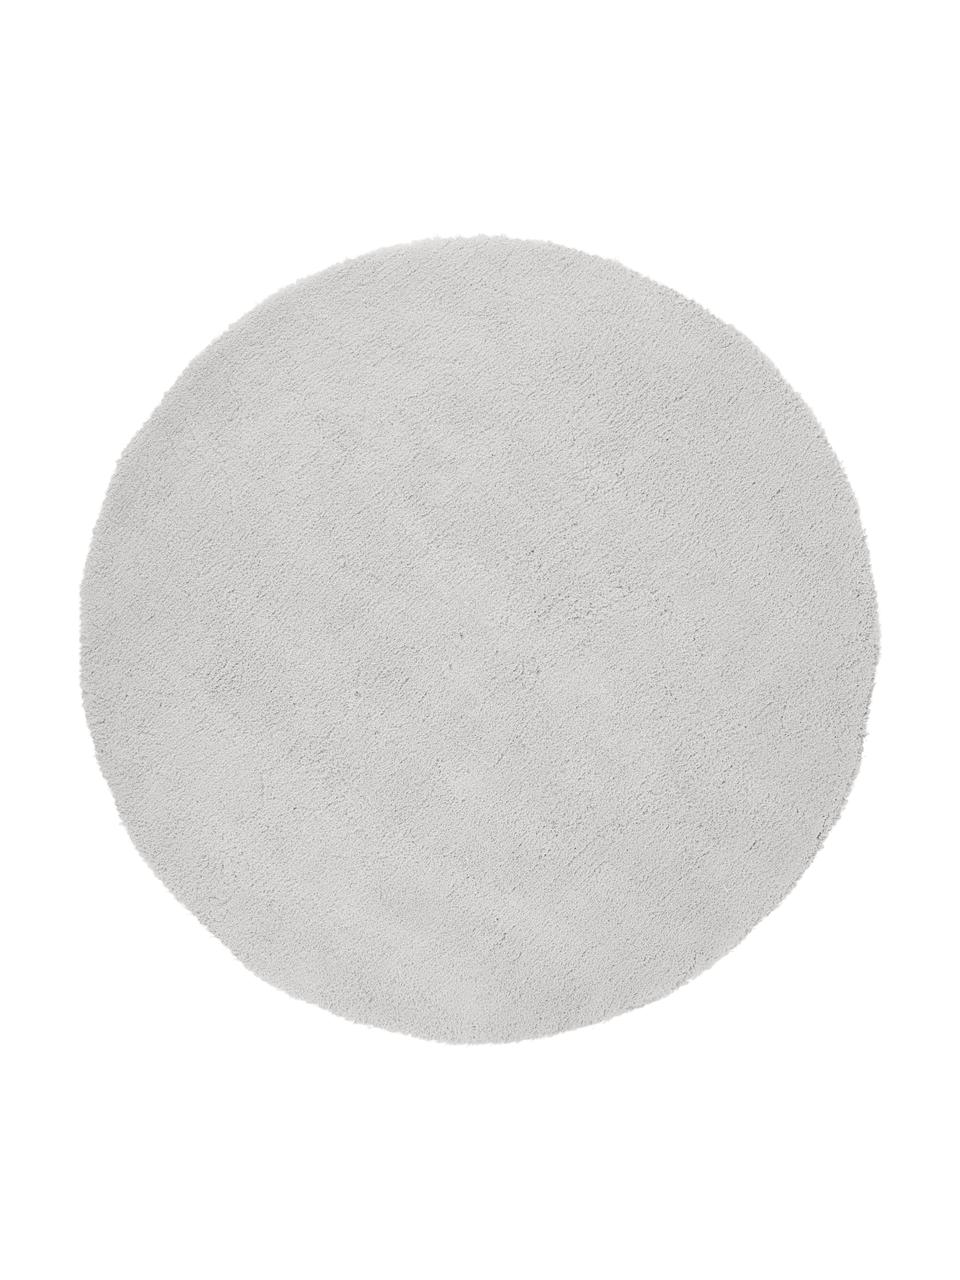 Tappeto rotondo morbido a pelo lungo grigio chiaro-beige Leighton, Retro: 70% poliestere, 30% coton, Grigio chiaro-beige, Ø 150 cm (taglia M)